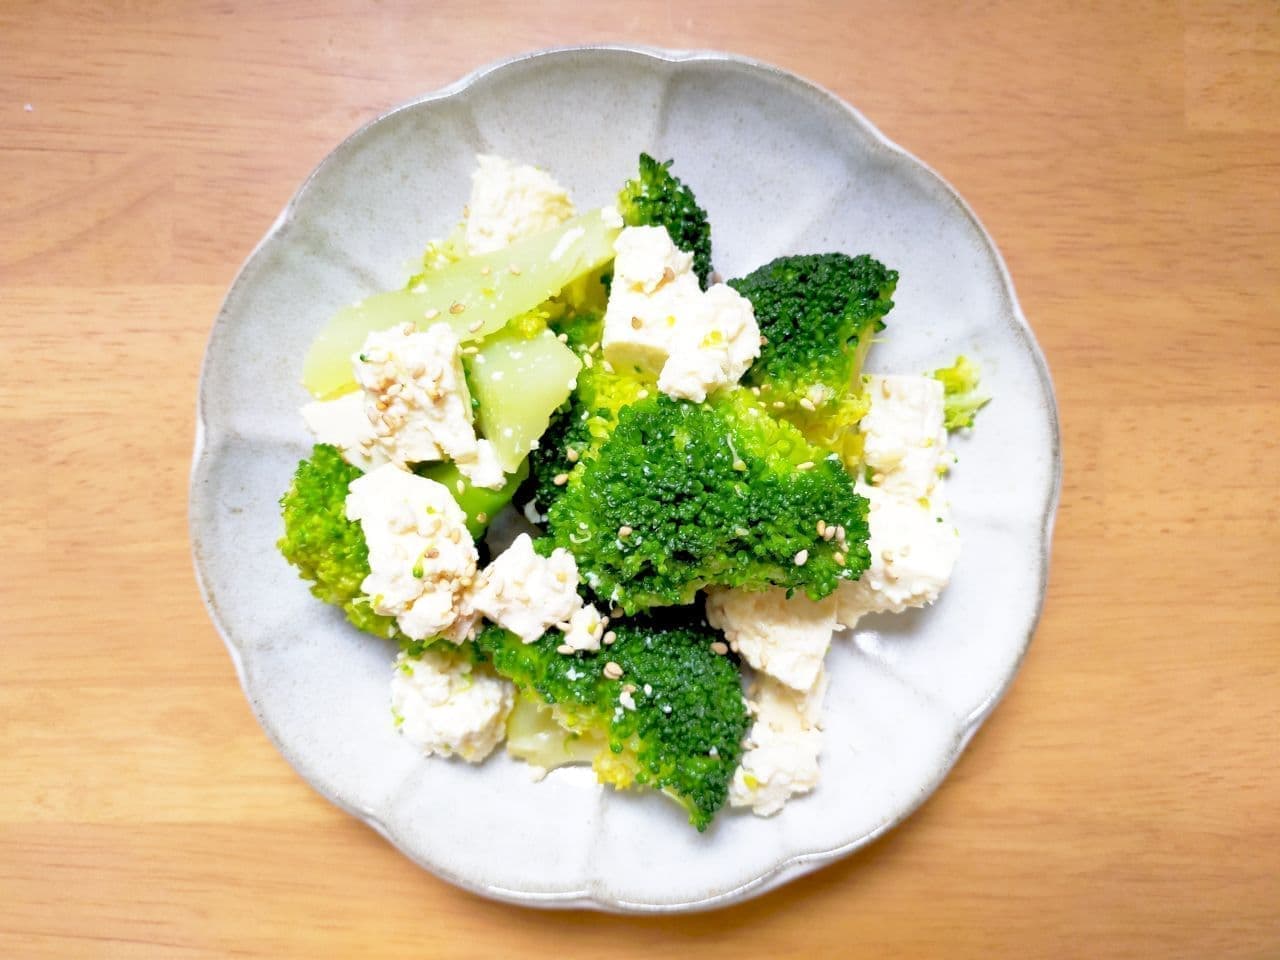 Recipe for "Broccoli and Tofu Namul